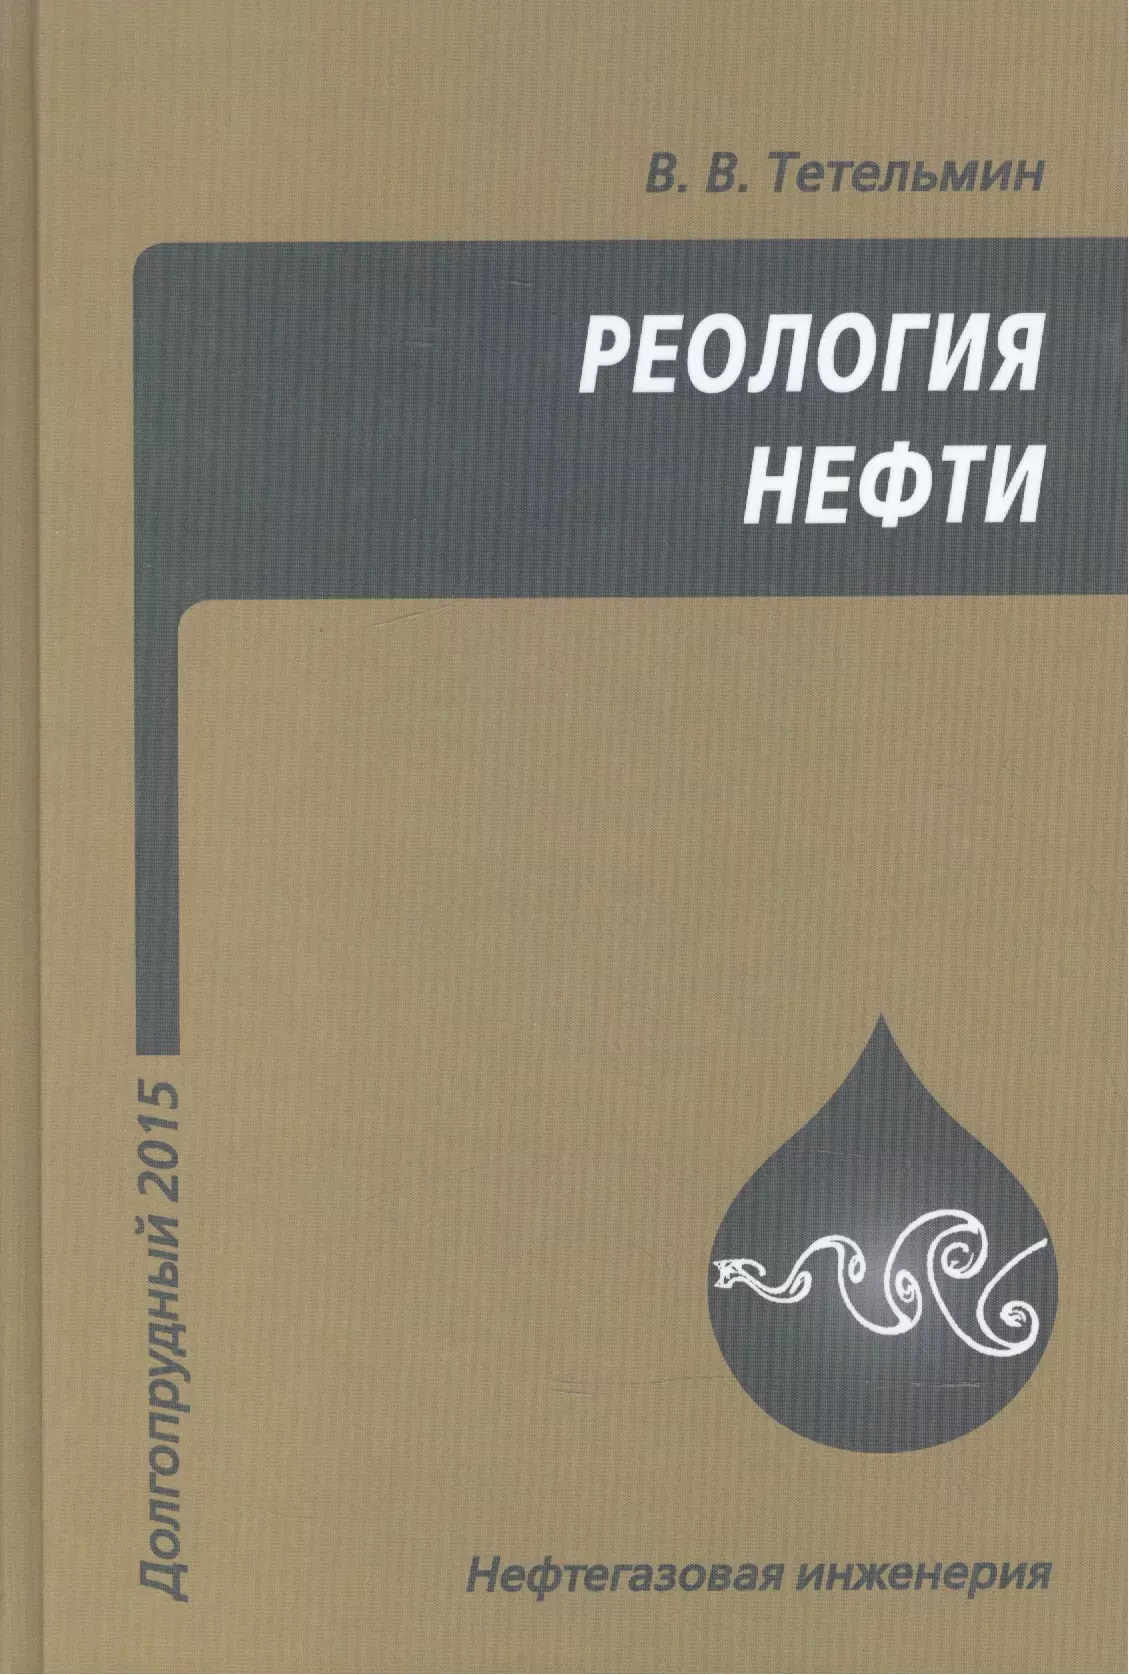 Тетельмин Владимир Владимирович - Реология нефти. Учебное издание